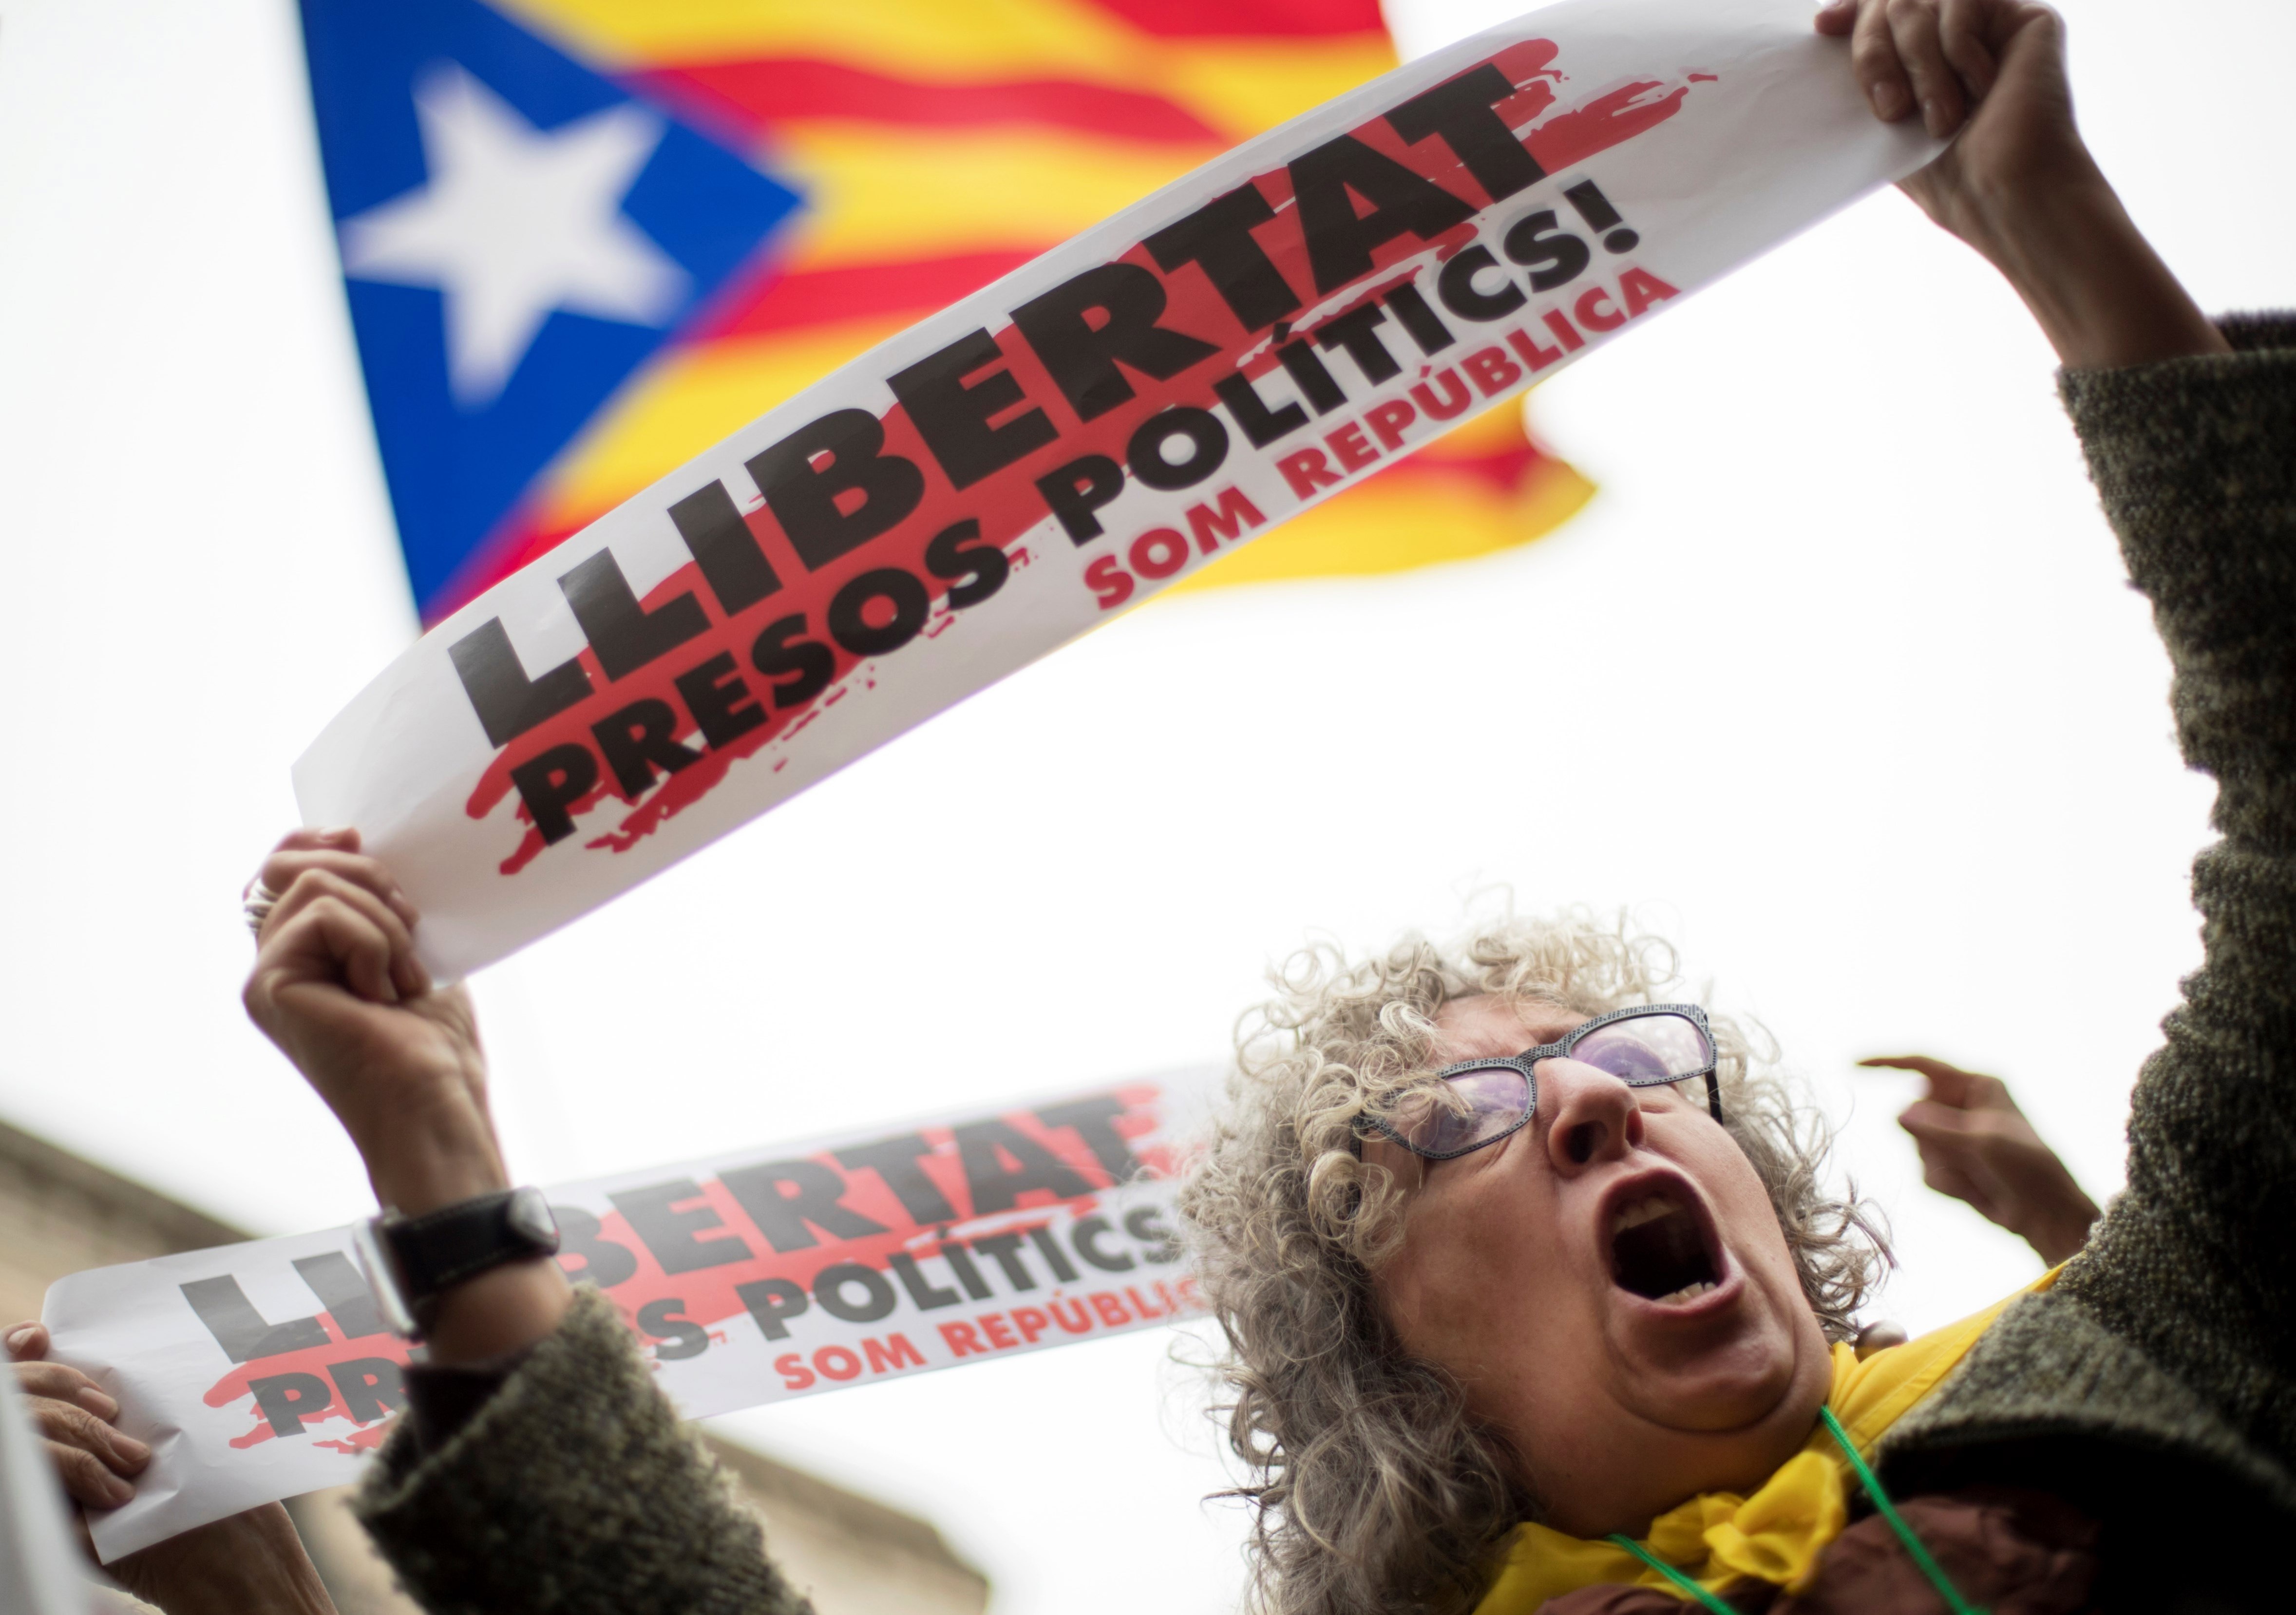 Испанският конституционен съд отмени декларацията за независимост на Каталуния. Огромна стачка блокира региона, като хората протестираха срещу арестуването на уволнени каталунски политици